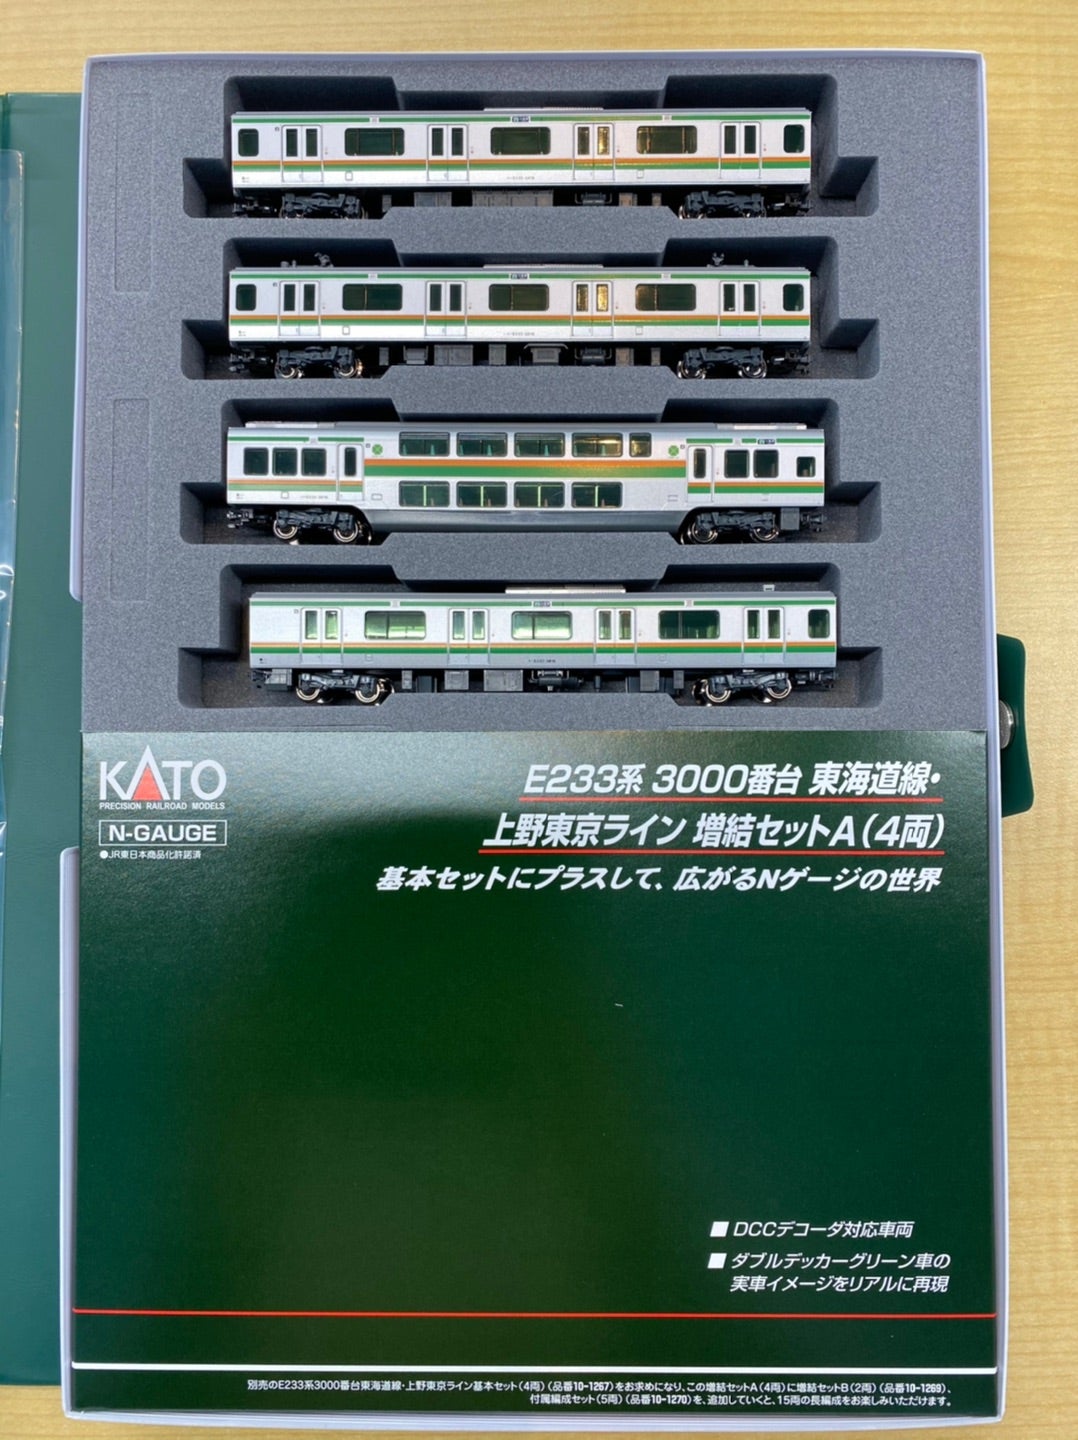 カトー製大人気のE233上野東京ラインシリーズが再生産です！*\(^o